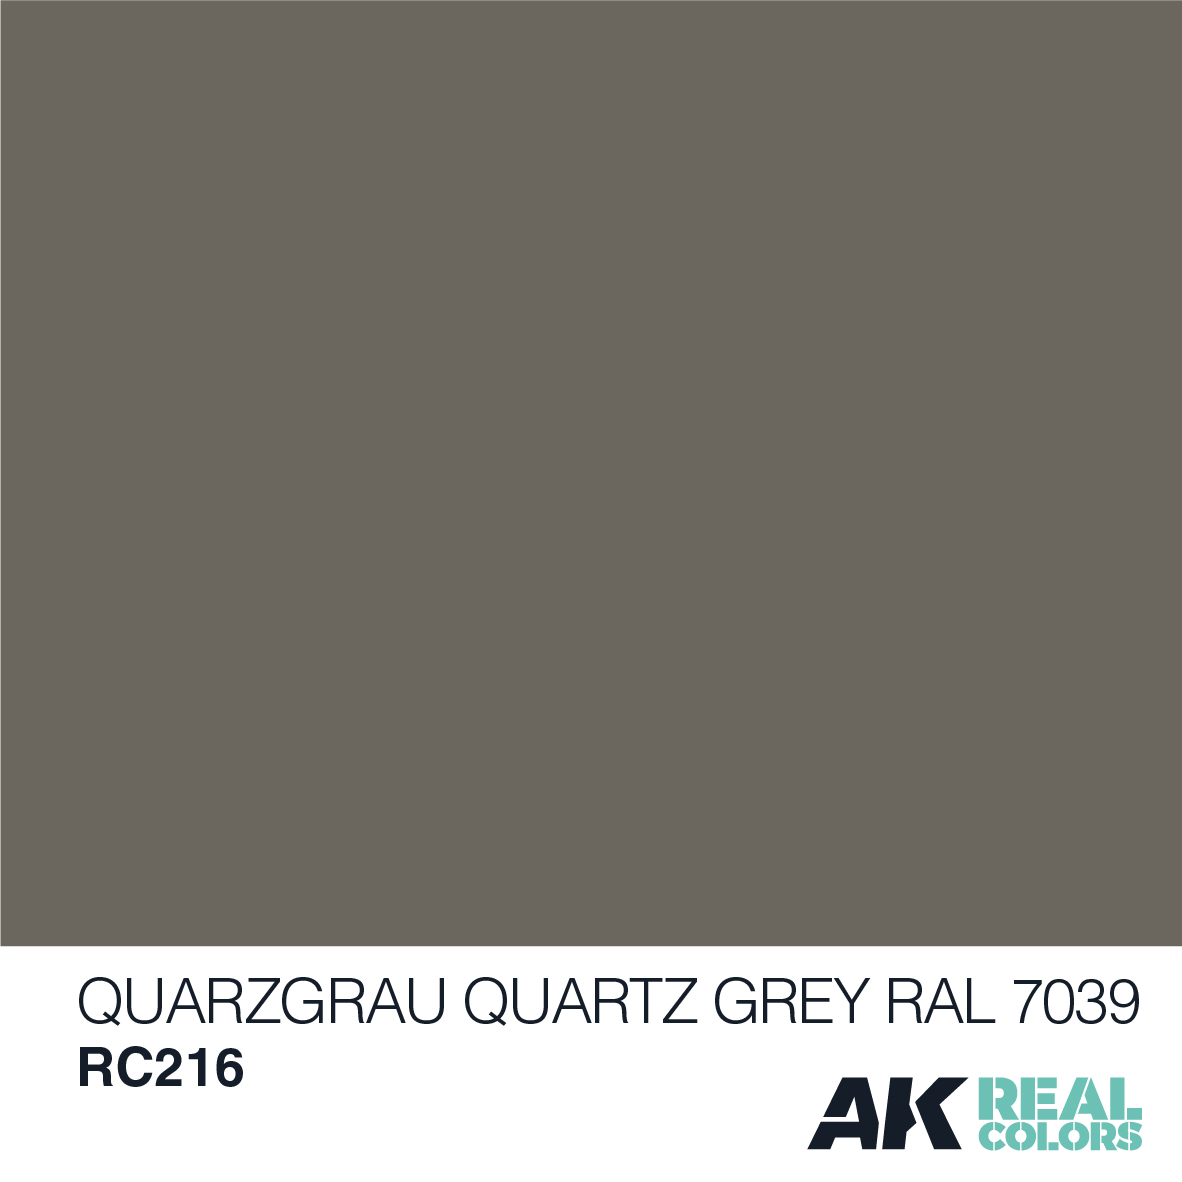 Quarzgrau-Quartz Grey RAL 7039